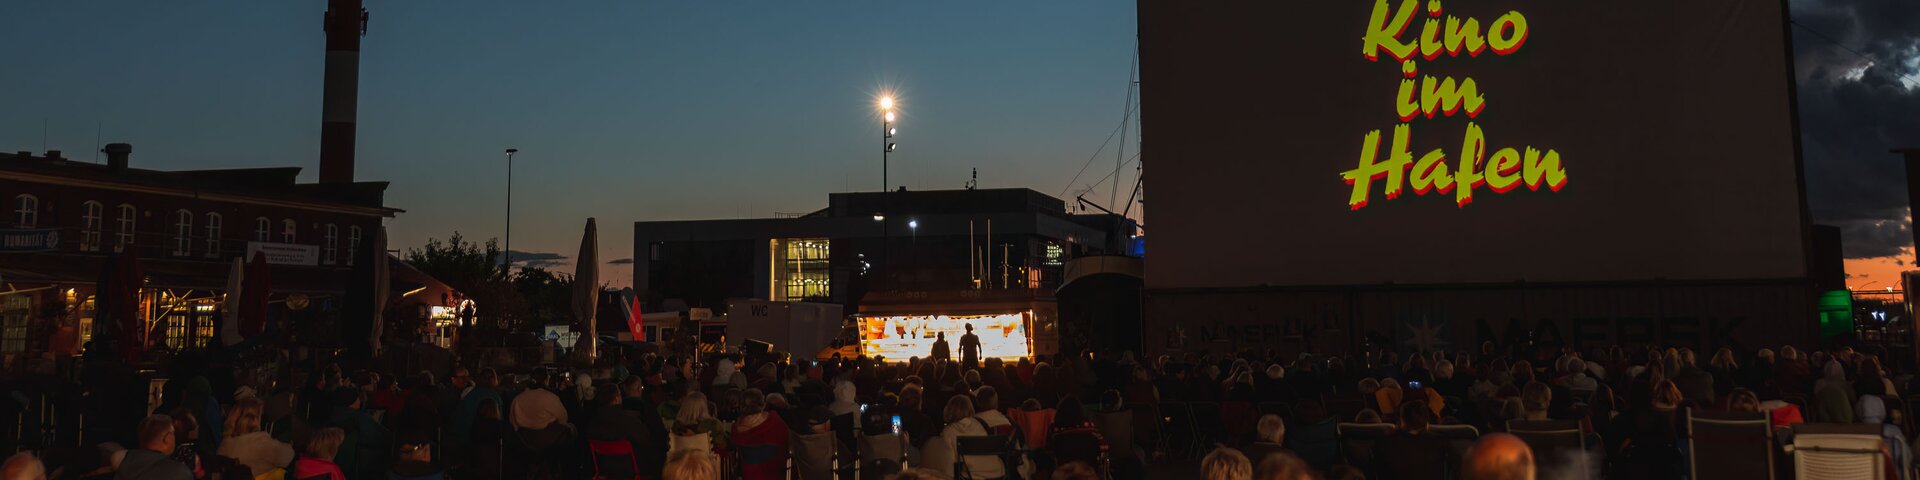 Outdoor Kino im Hafen bei Nacht | © Kulturamt Bremerhaven – Kühl